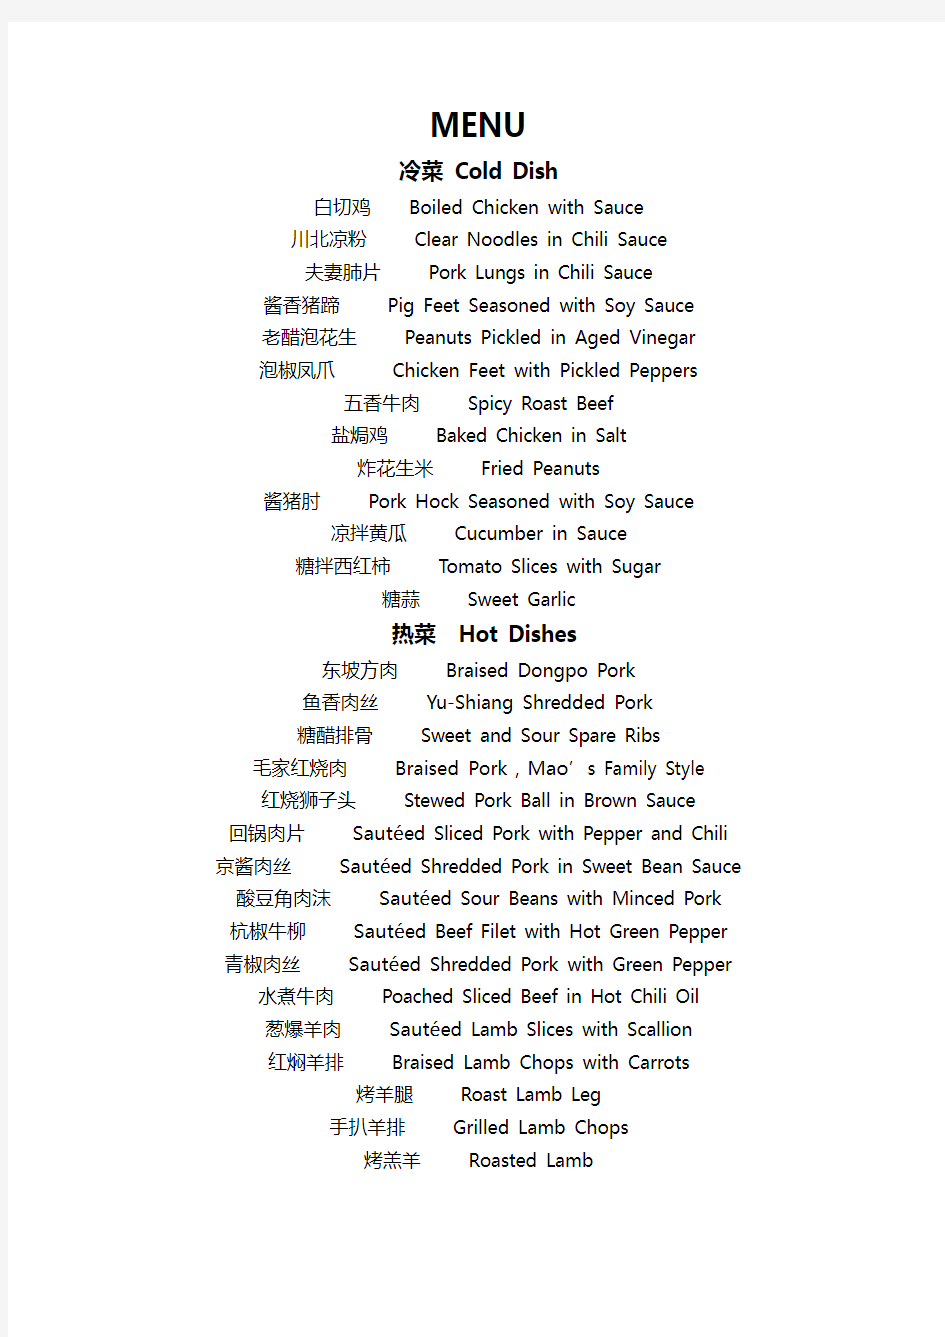 常用中国菜中英文菜单对照表